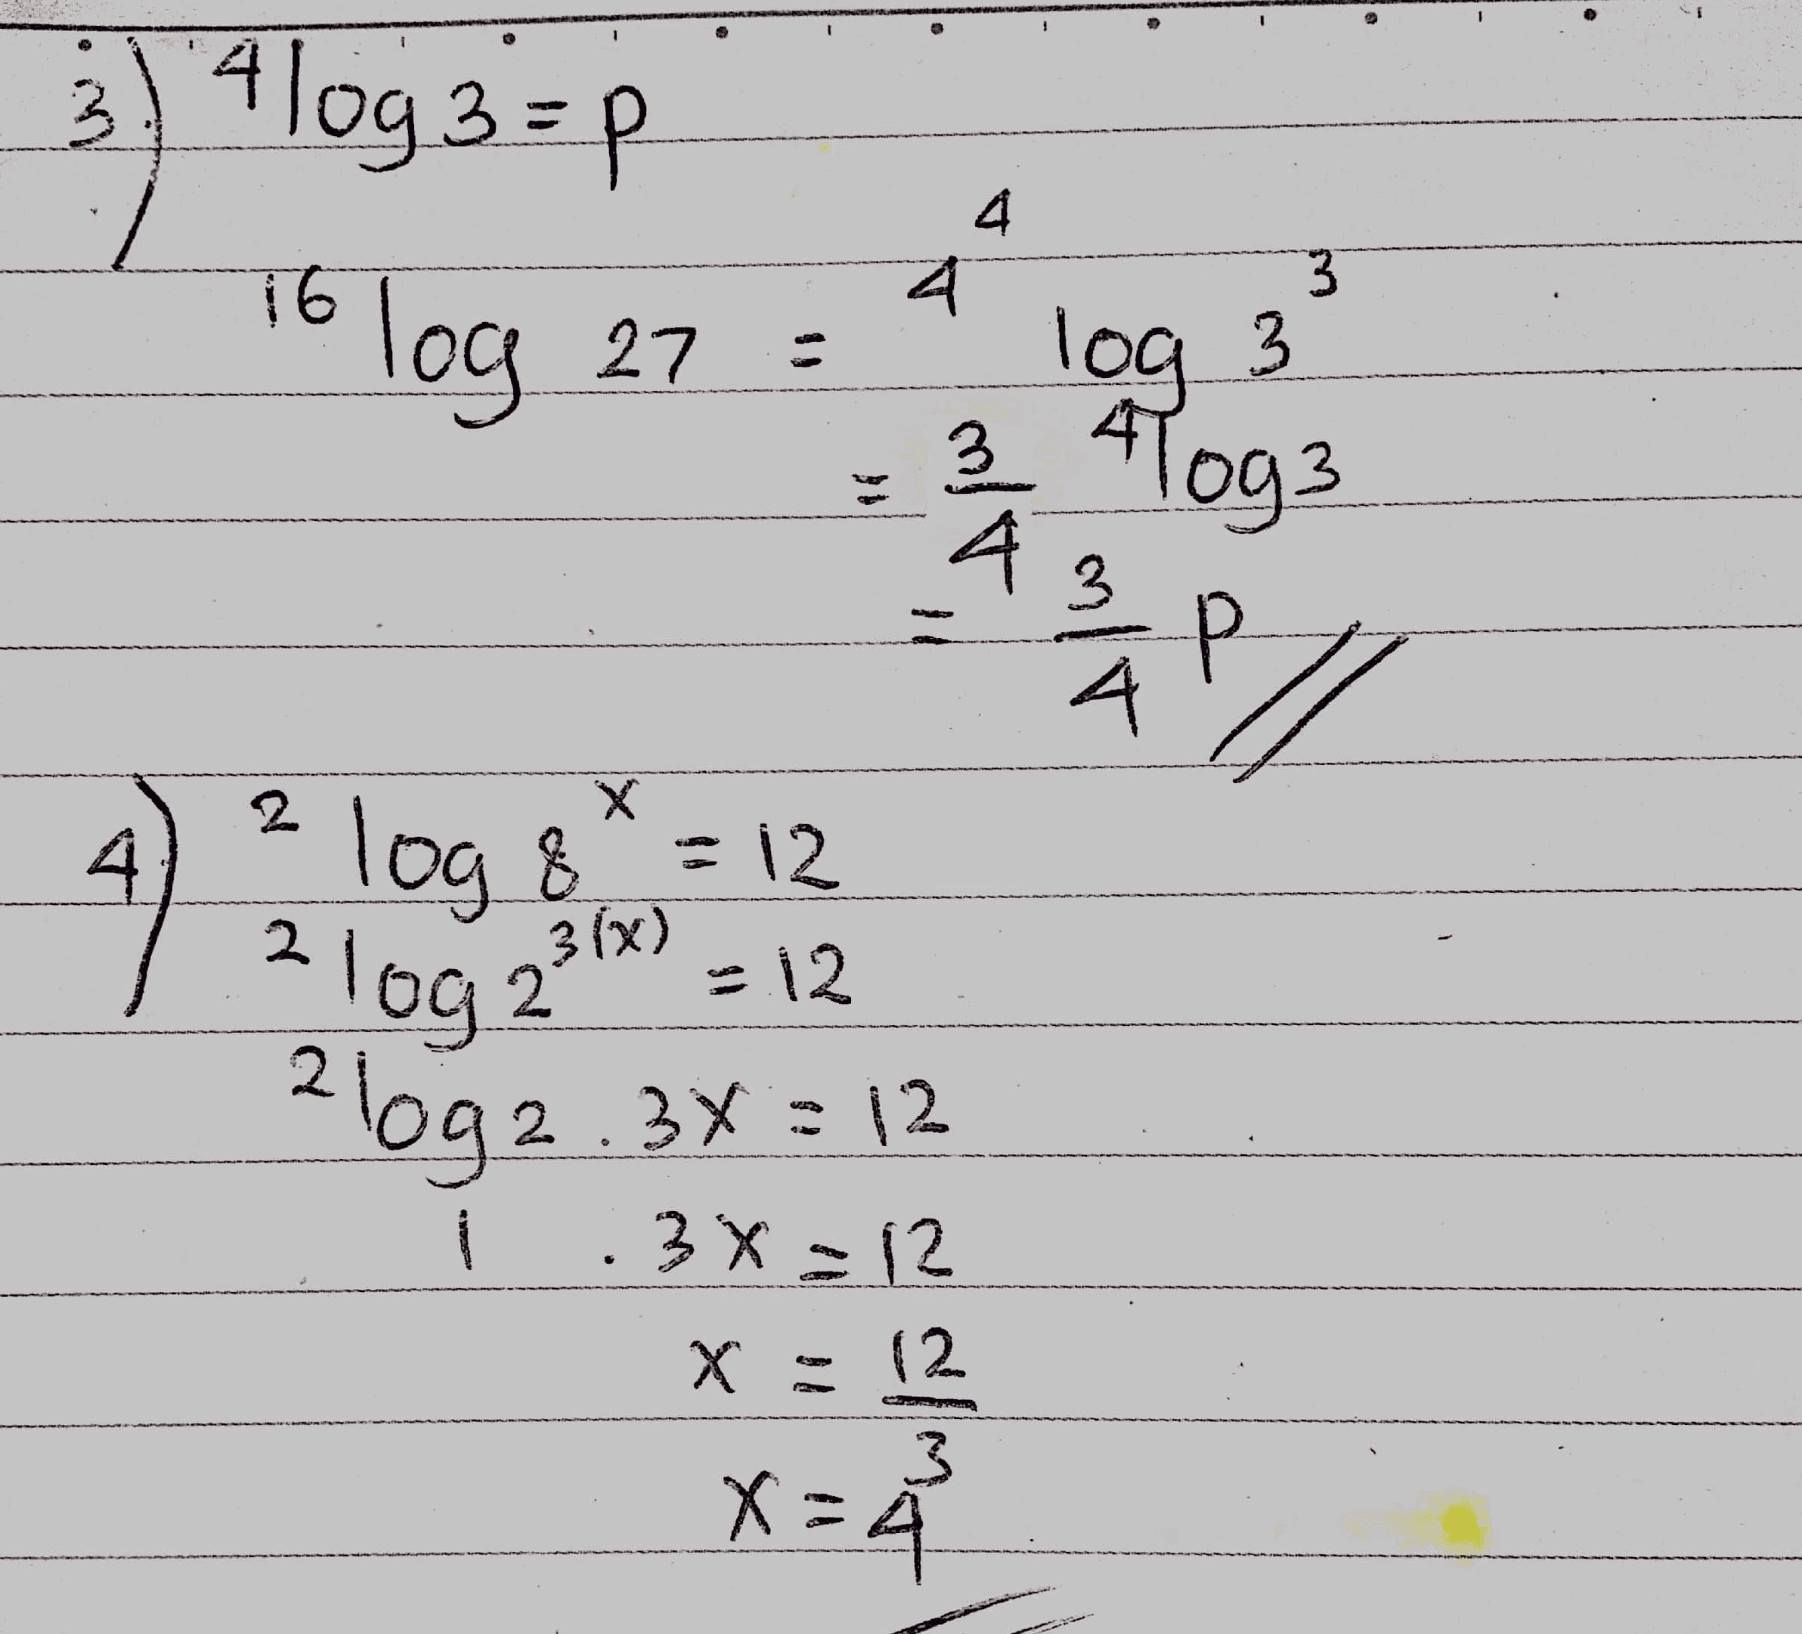 3) 4 log 3 =p log 27 4 3 To log log 3 43 4 3 Aloga P/ wered 2 4. X % = 12 log & 2 3(x) log2 -12 26092.34 = 12 OSCAN 3x = 12 (2 3 X x = 